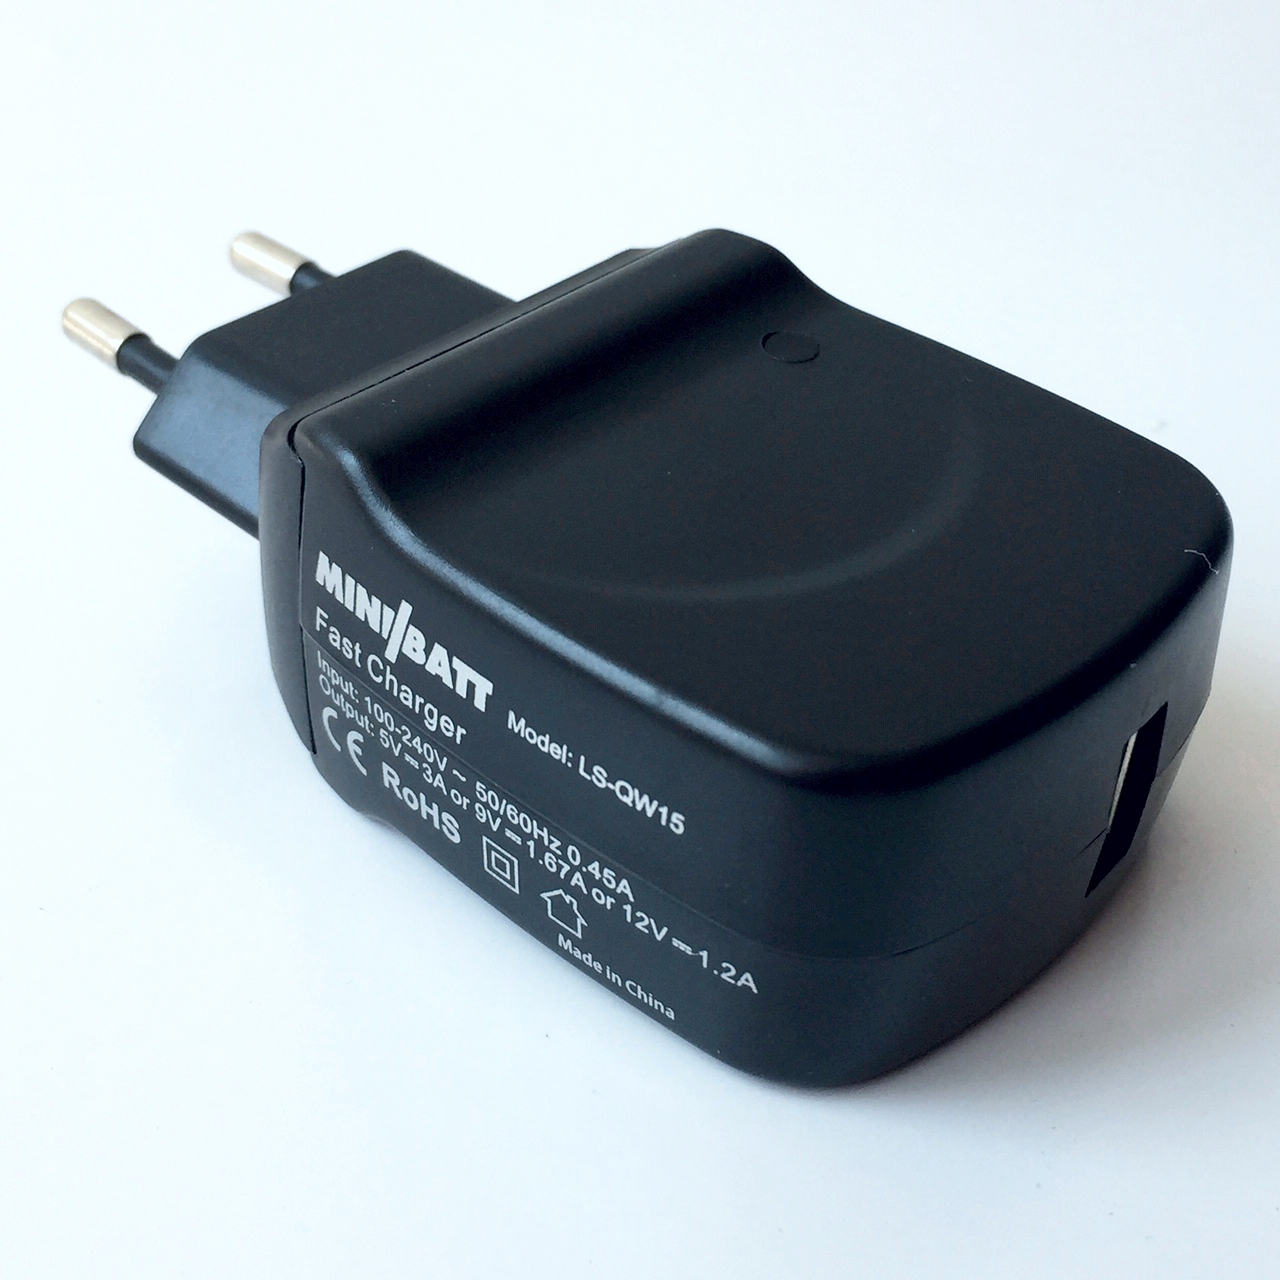 MINIBATT Adaptor Quick Charge 2.0 ( 5V/9V/12V) EU Version